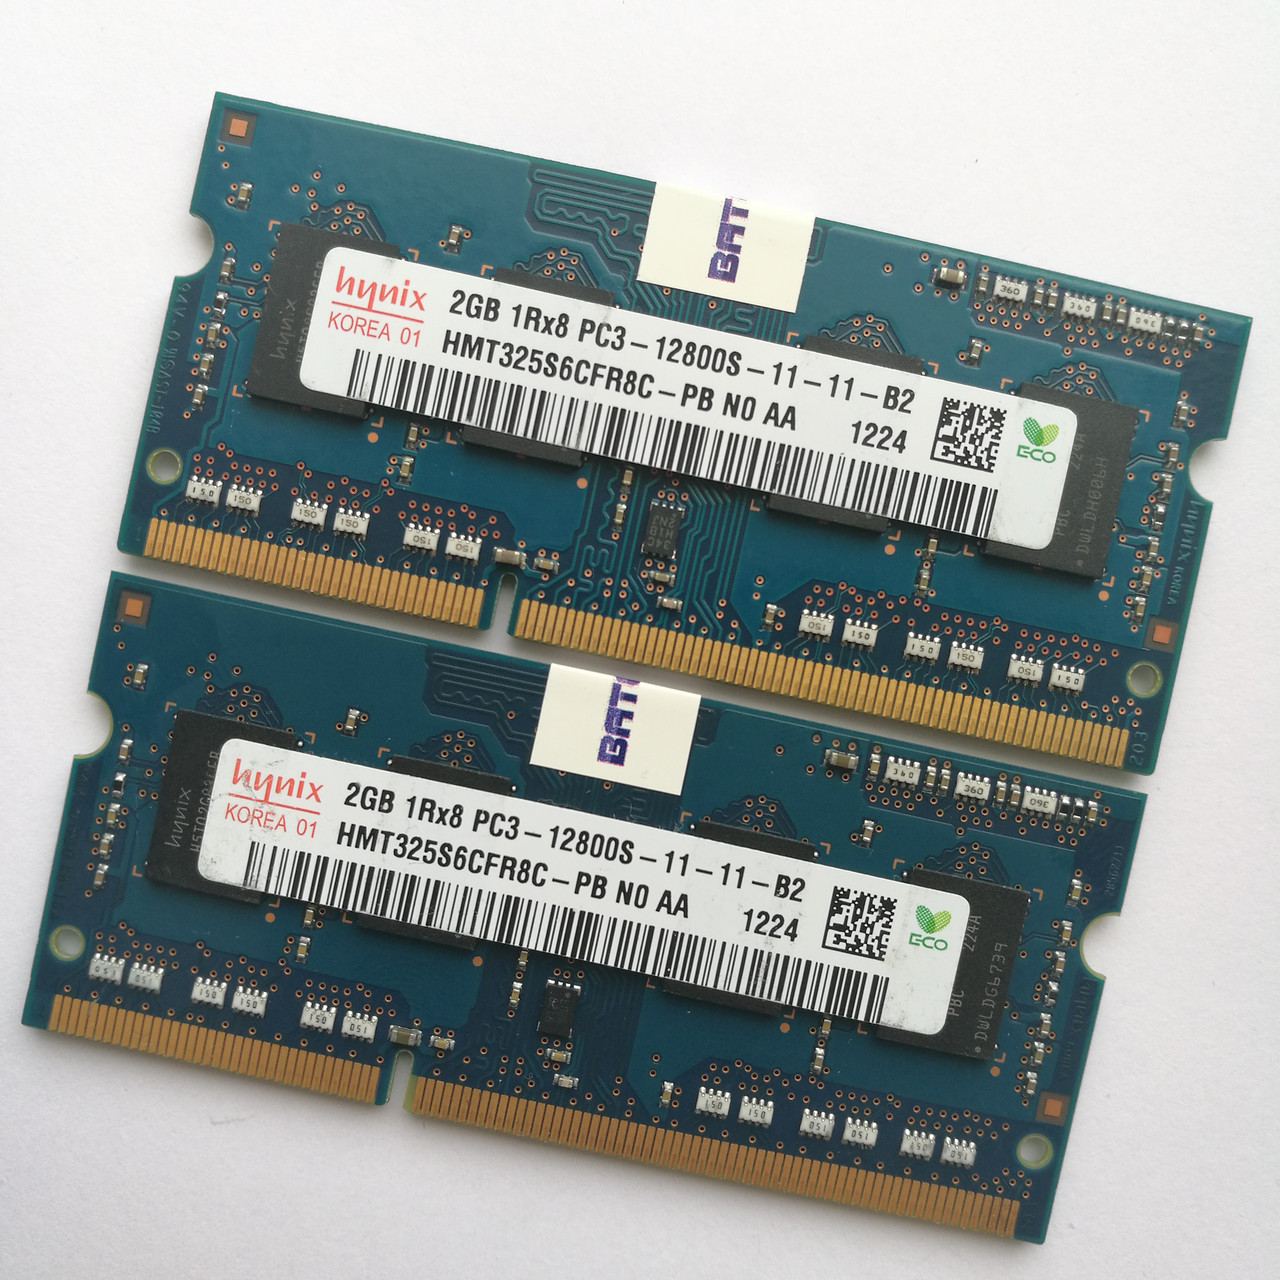 Оперативная память для ноутбука Hynix SODIMM DDR3 4Gb (2+2) 1600MHz 12800S CL11 (HMT325S6CFR8C-PB N0 AA) Б/У, фото 1